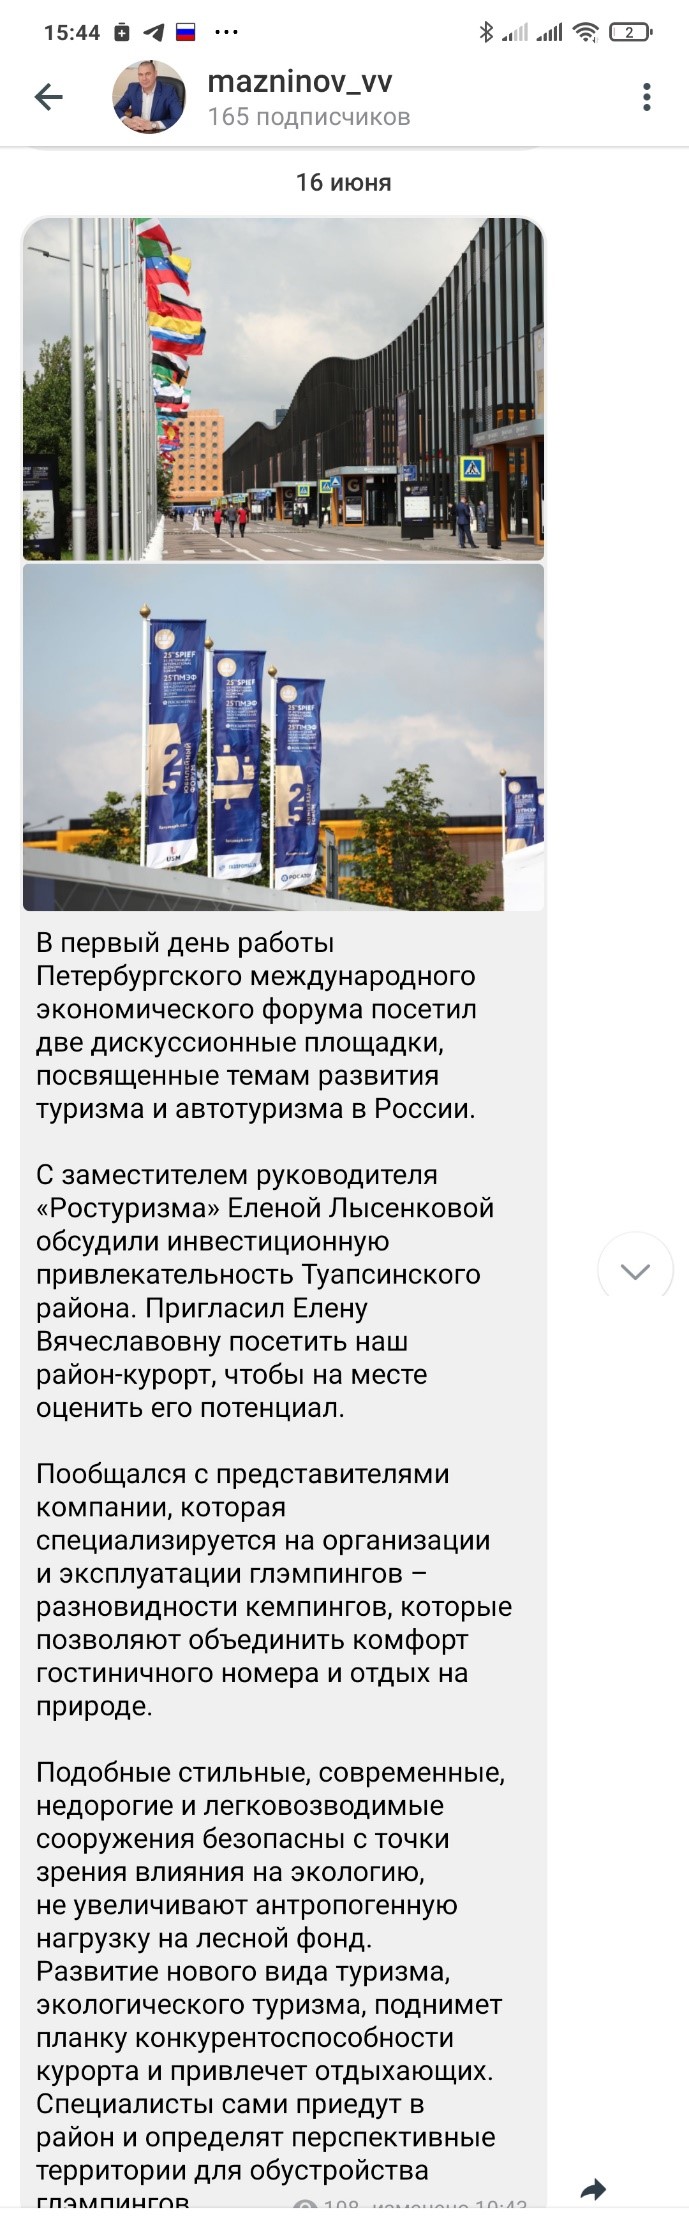 Для чего прокатился на форум в Петербург глава Туапсинского района?